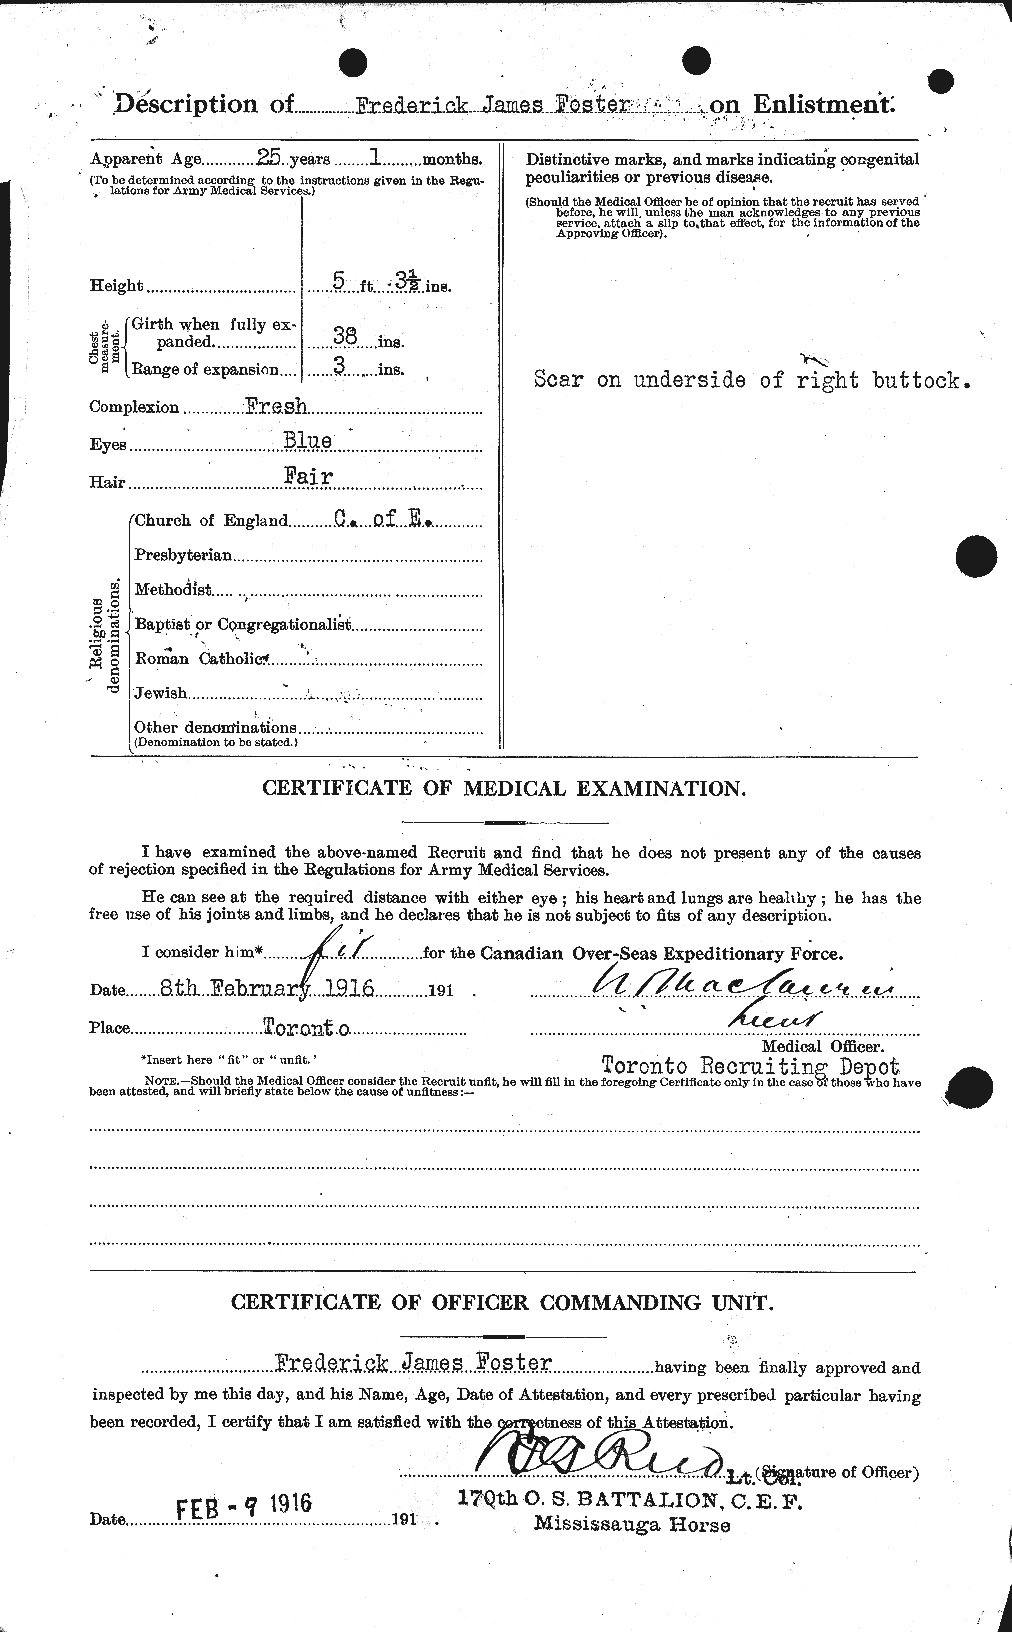 Dossiers du Personnel de la Première Guerre mondiale - CEC 330653b